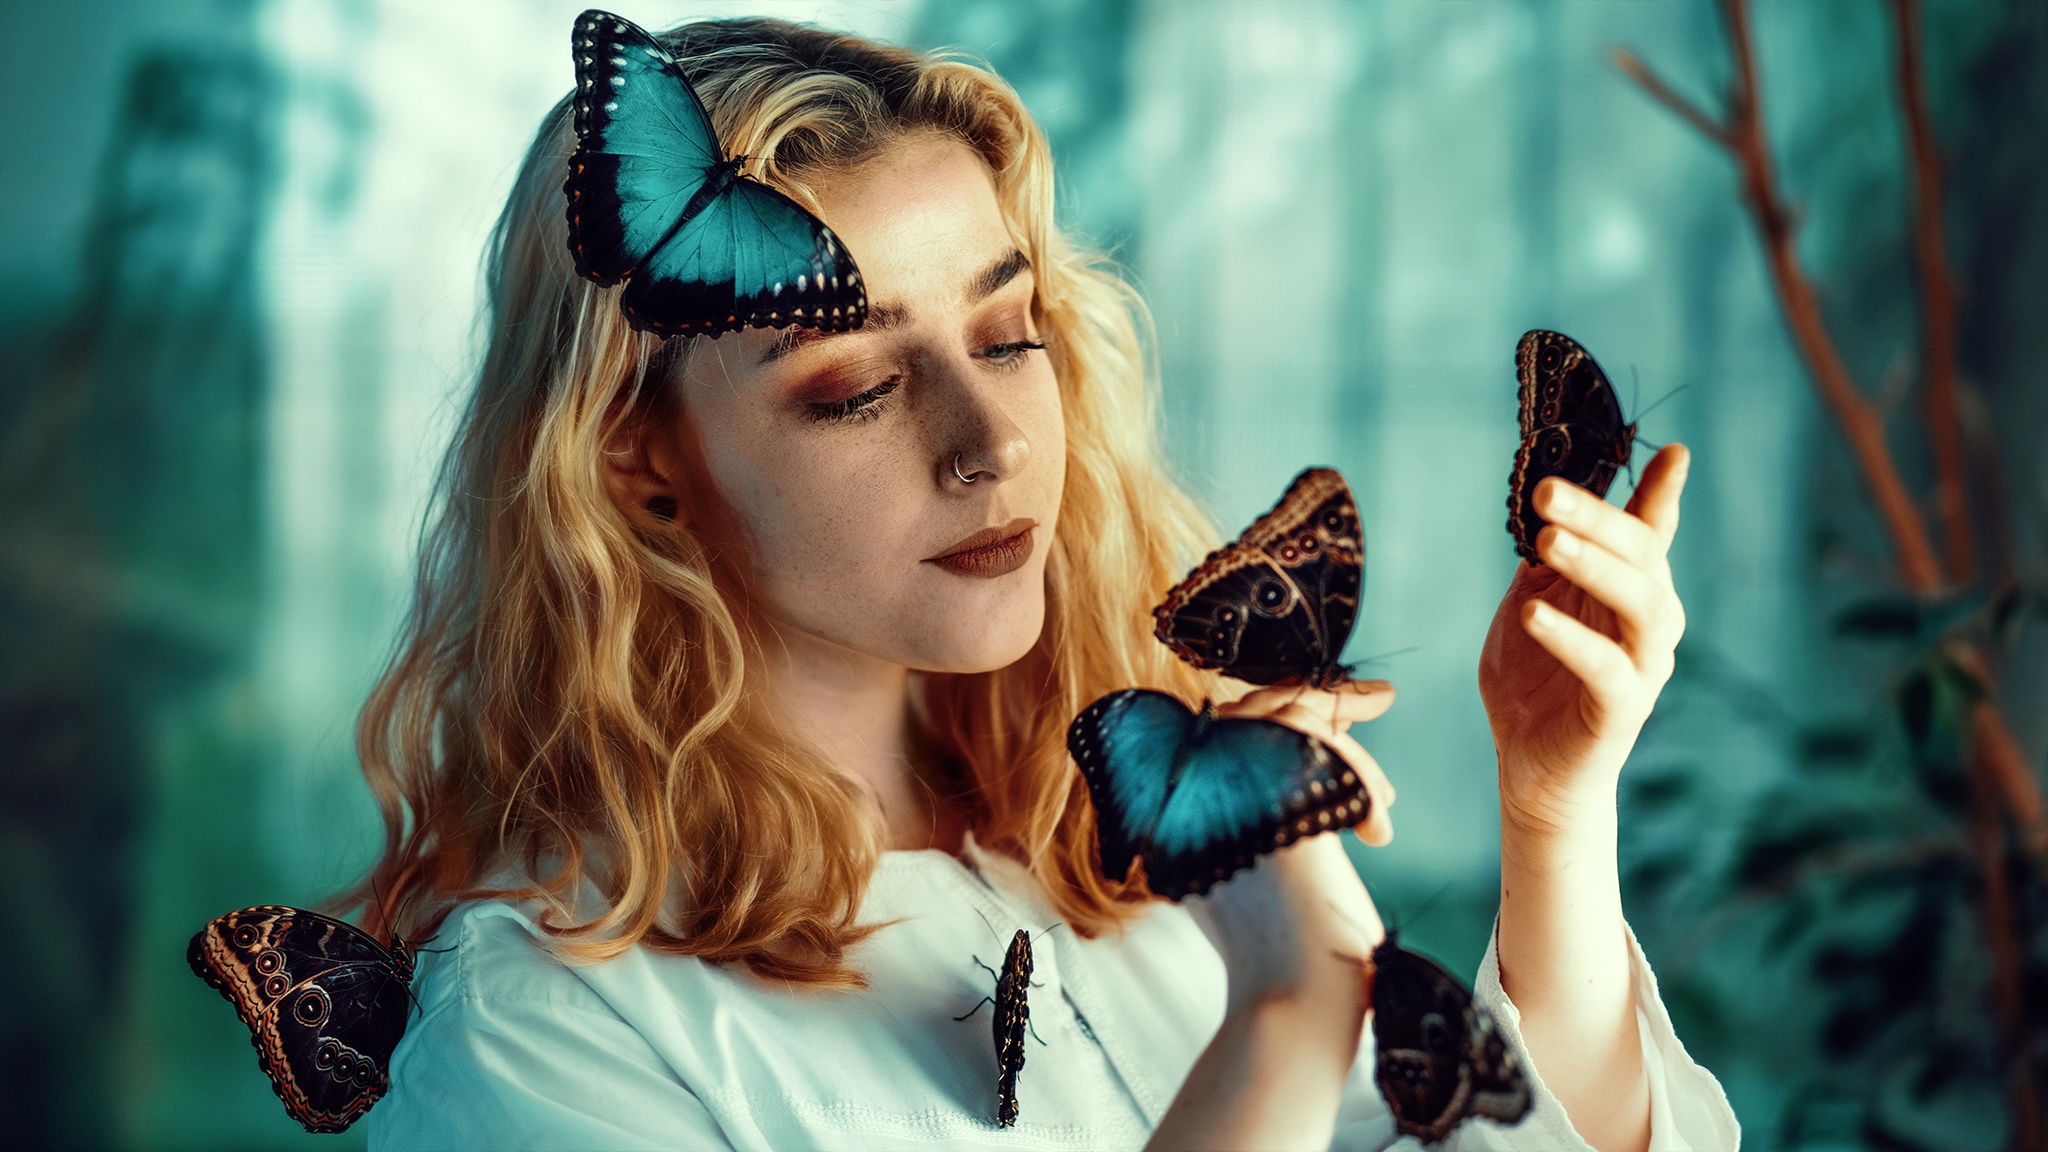 Download mobile wallpaper Butterfly, Mood, Blonde, Model, Women, Depth Of Field for free.